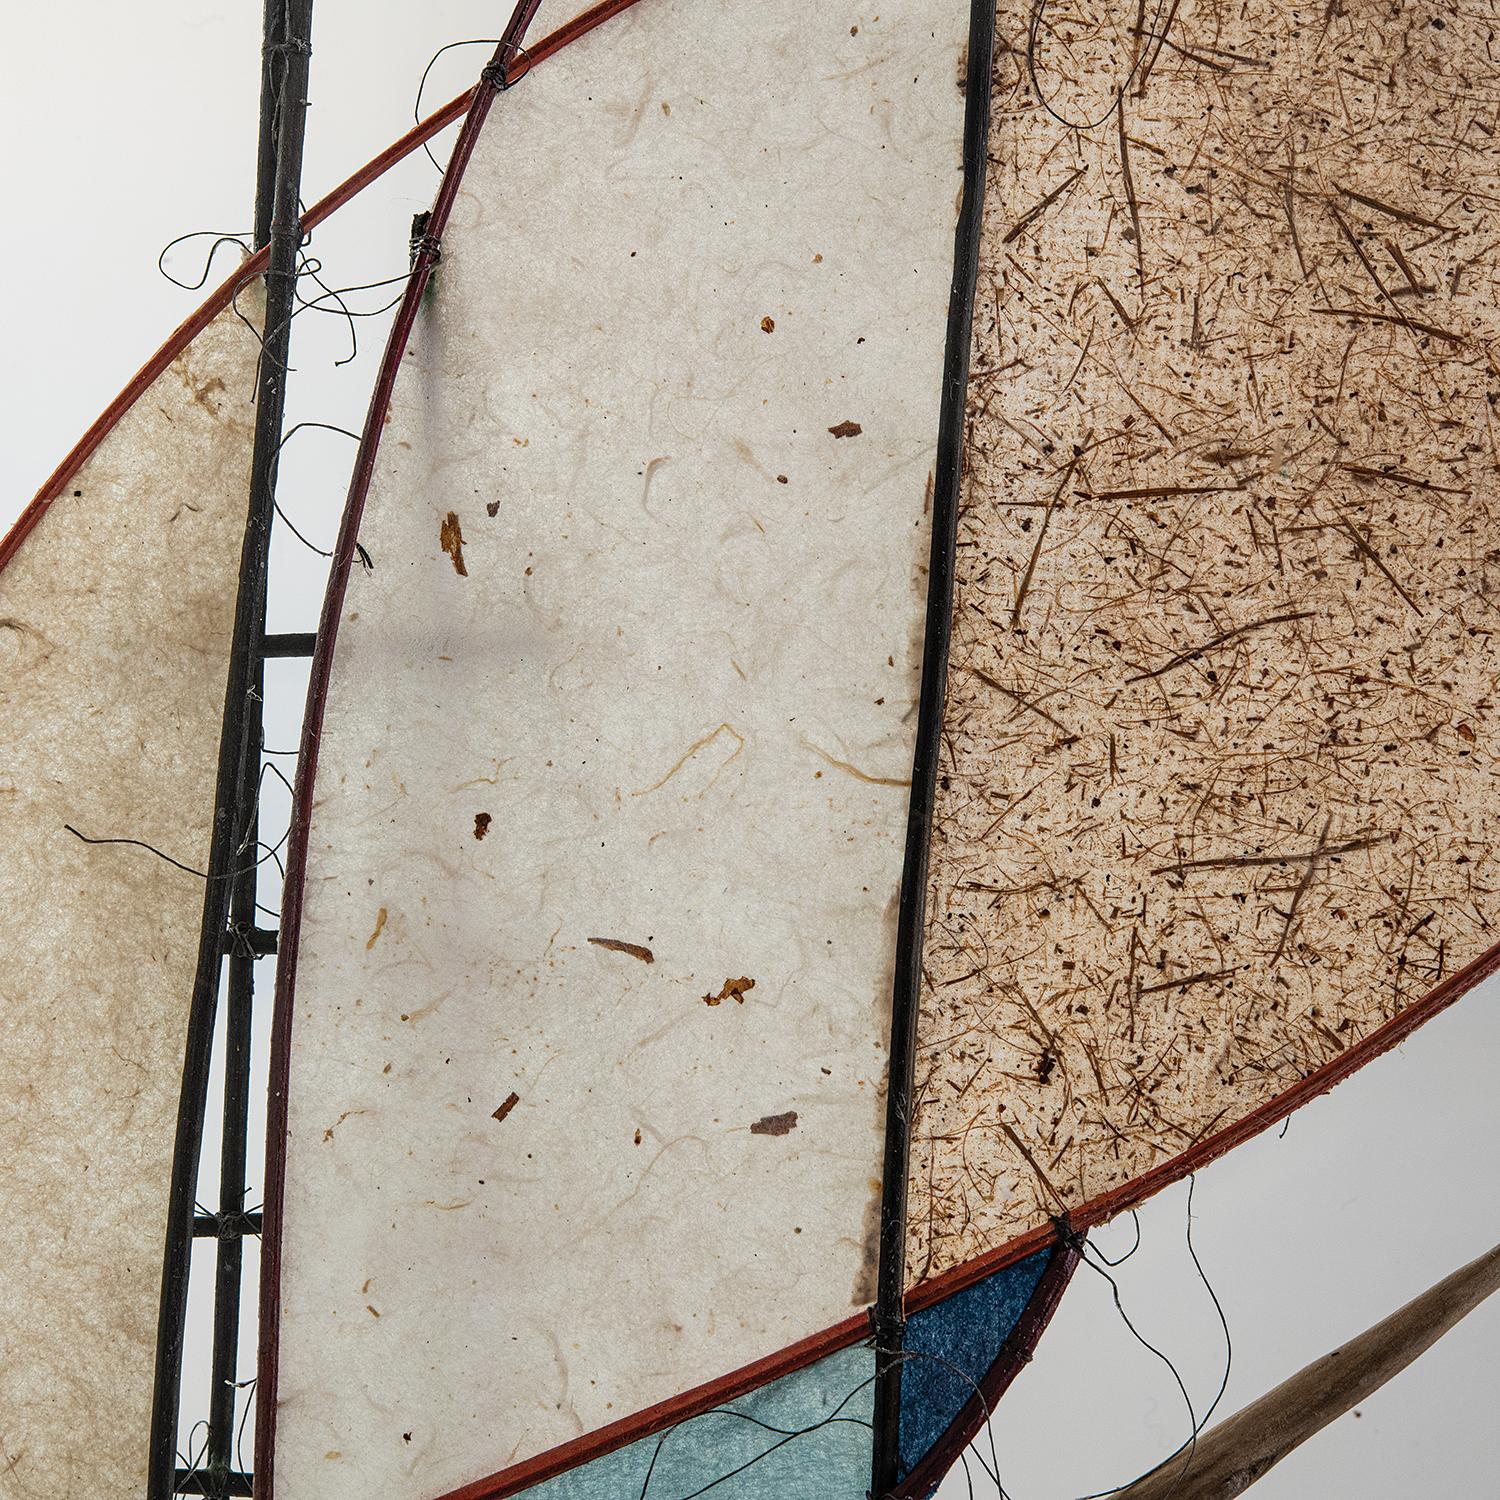 Paper Sculpture III (2020) fait partie d'une série d'objets abstraits en forme de bateau de la sculptrice danoise Jane Balsgaard. La construction minimaliste se compose de bambou, de piassava, de saule, de fil de pêche, de papier japonais et de